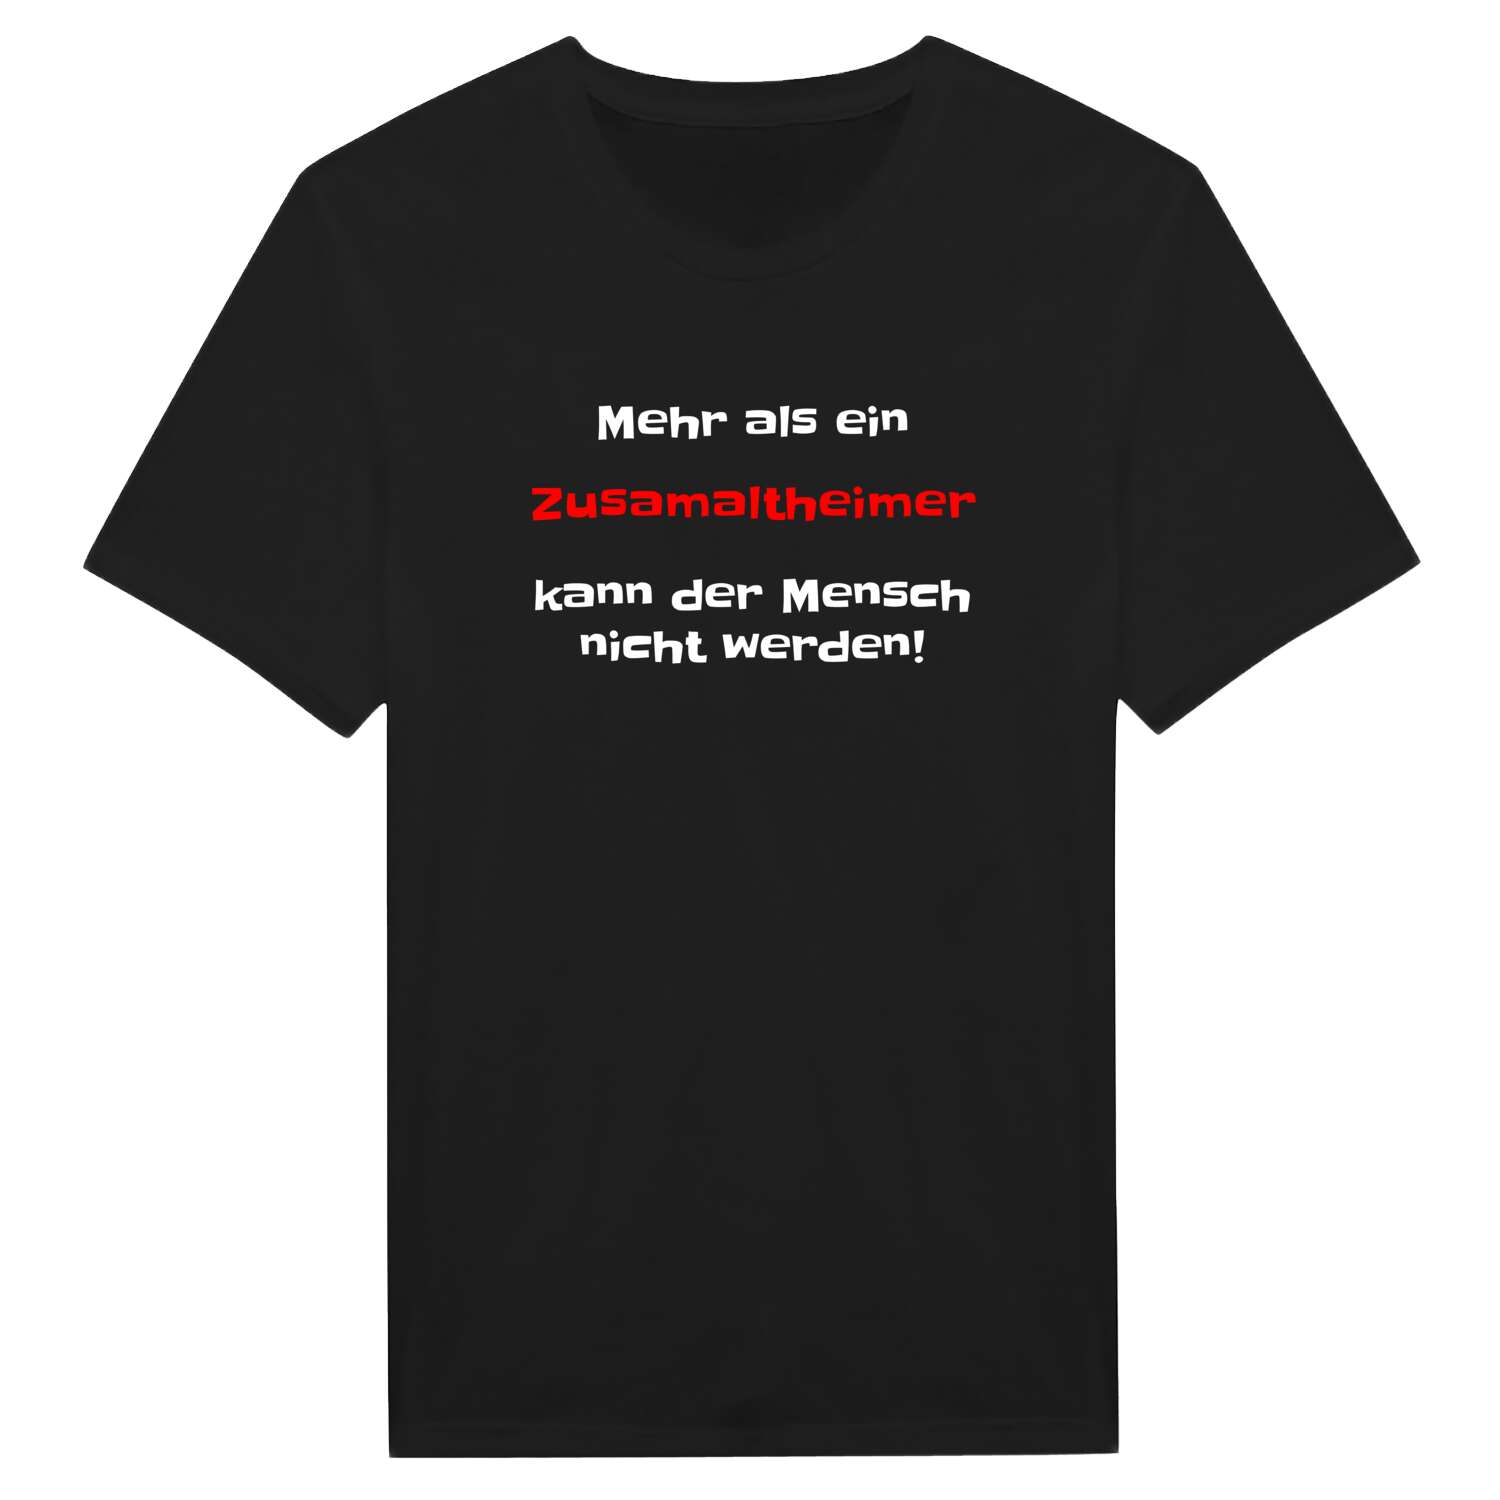 Zusamaltheim T-Shirt »Mehr als ein«